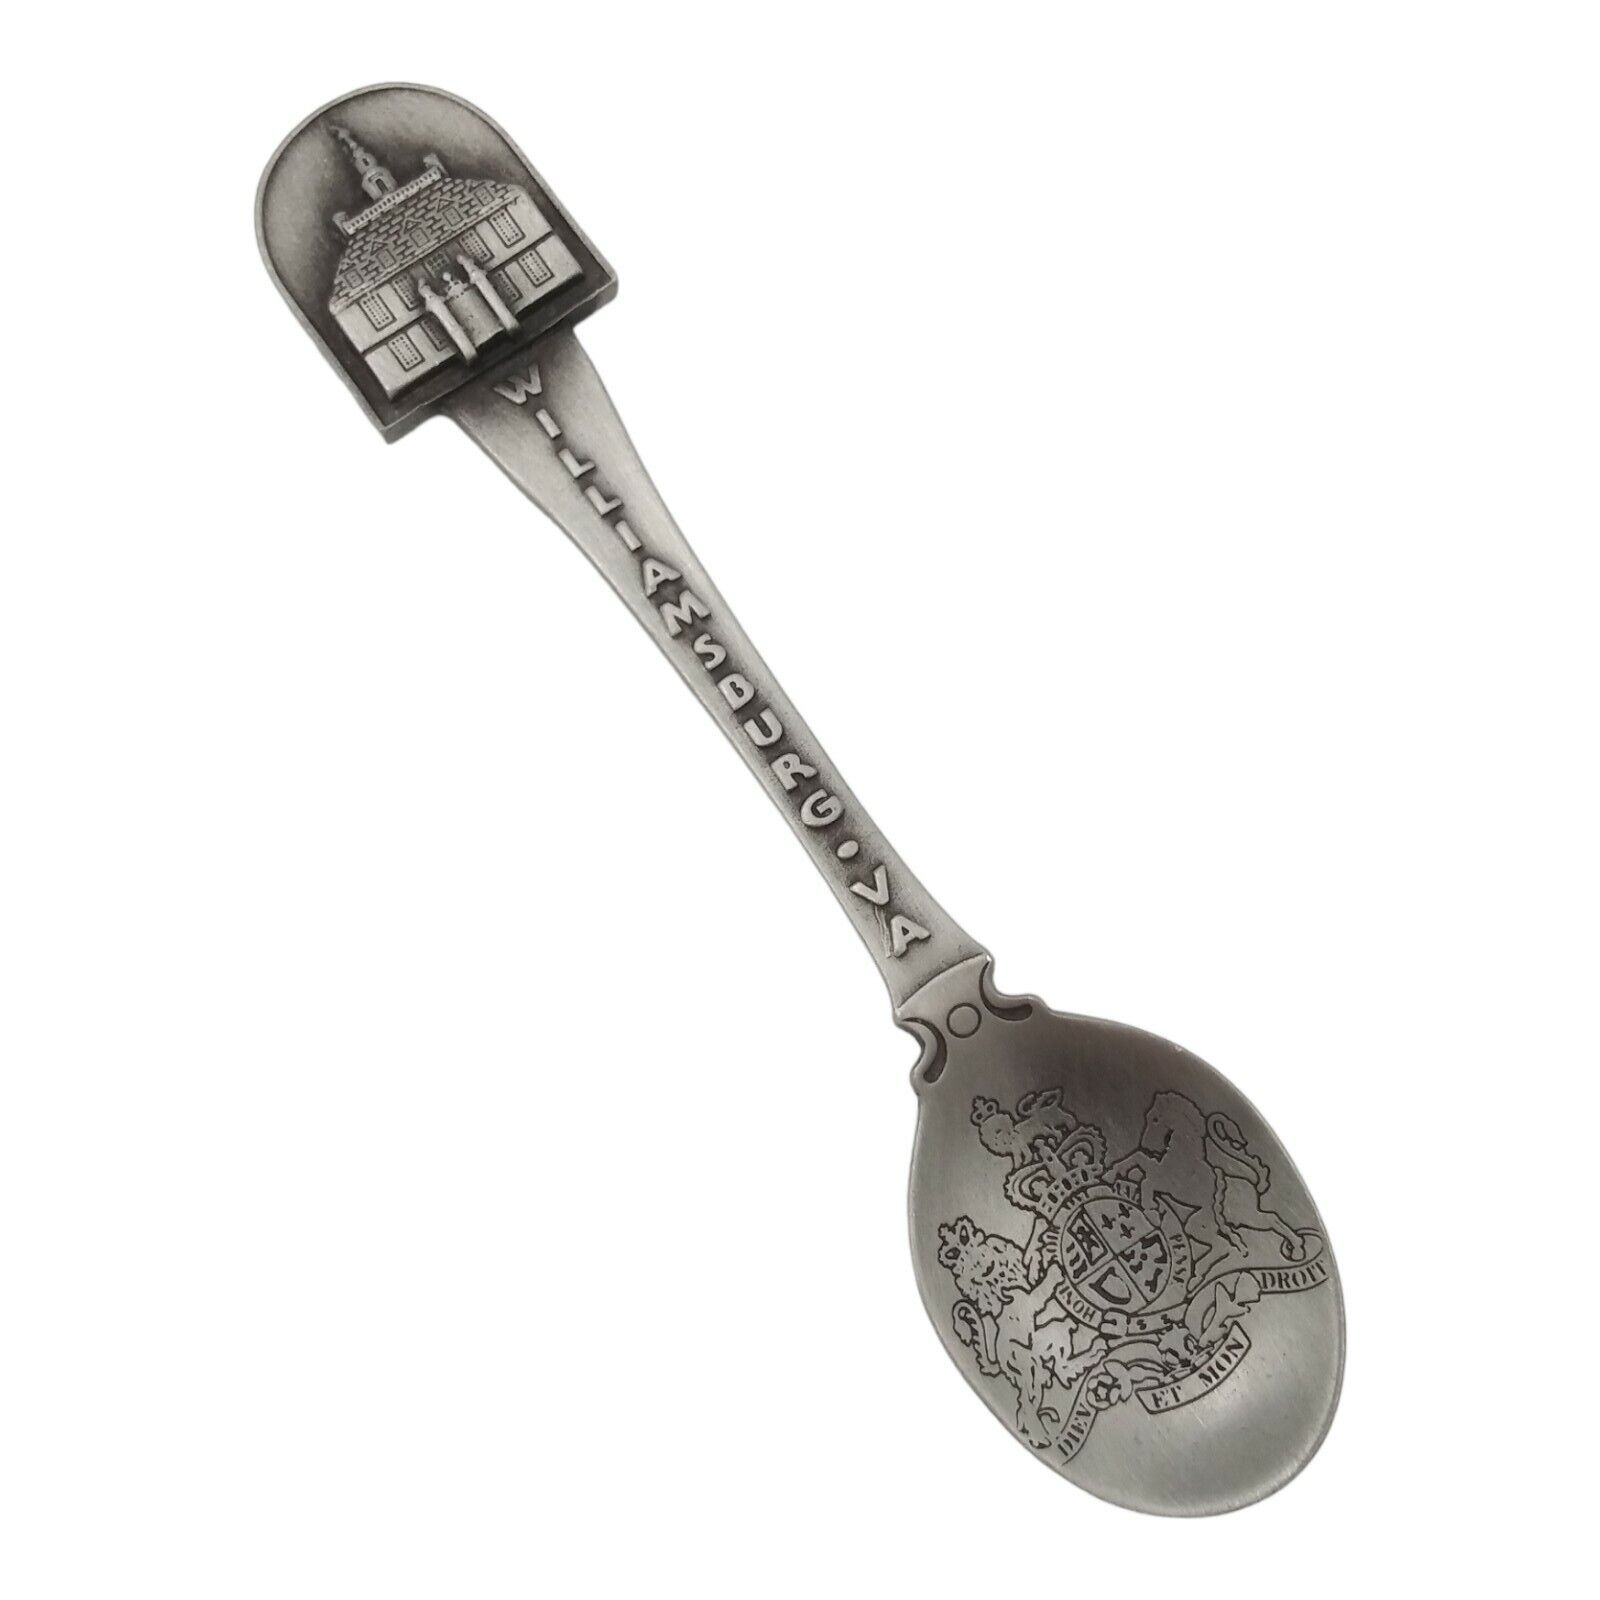 Vintage Williamsburg Virginia Souvenir Spoon US Collectible Pewter